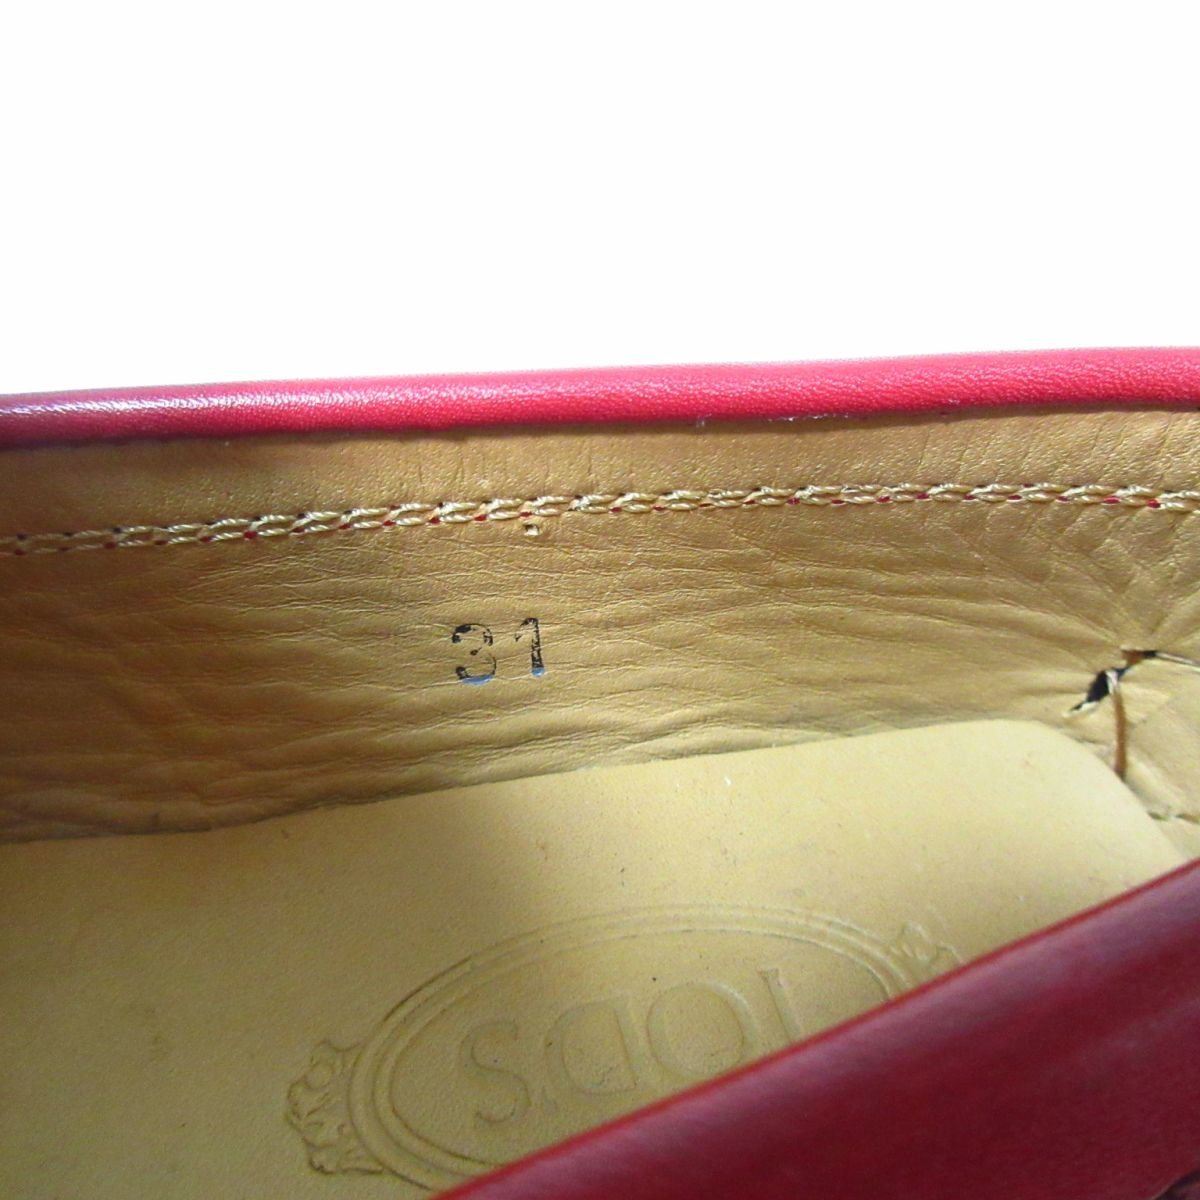  хорошая вещь TOD\'S junior Tod's Junior кожа gomi-ni кисточка Loafer обувь для вождения 31 примерно 19cm красный красный 012